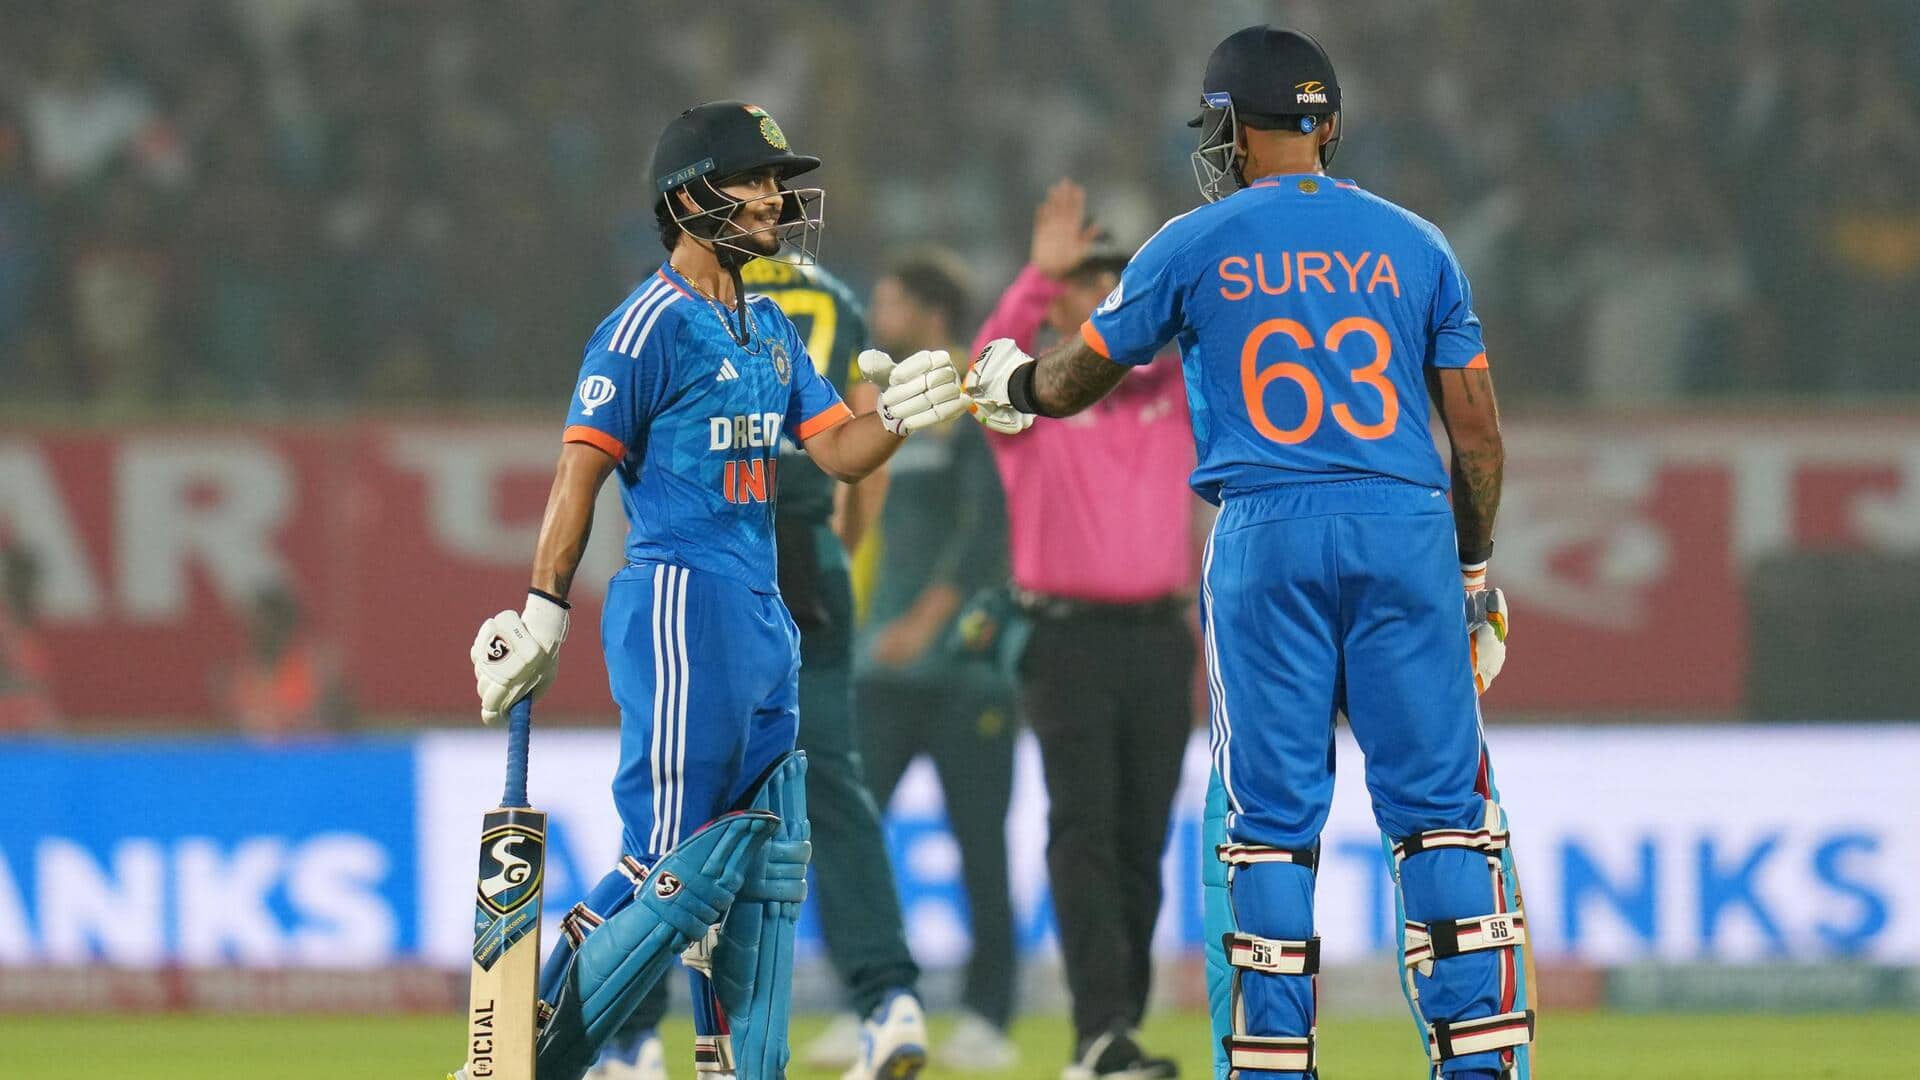 भारतीय क्रिकेट टीम की टी-20 अंतरराष्ट्रीय में लक्ष्य का पीछा करते हुए 5 सबसे बड़ी जीत 